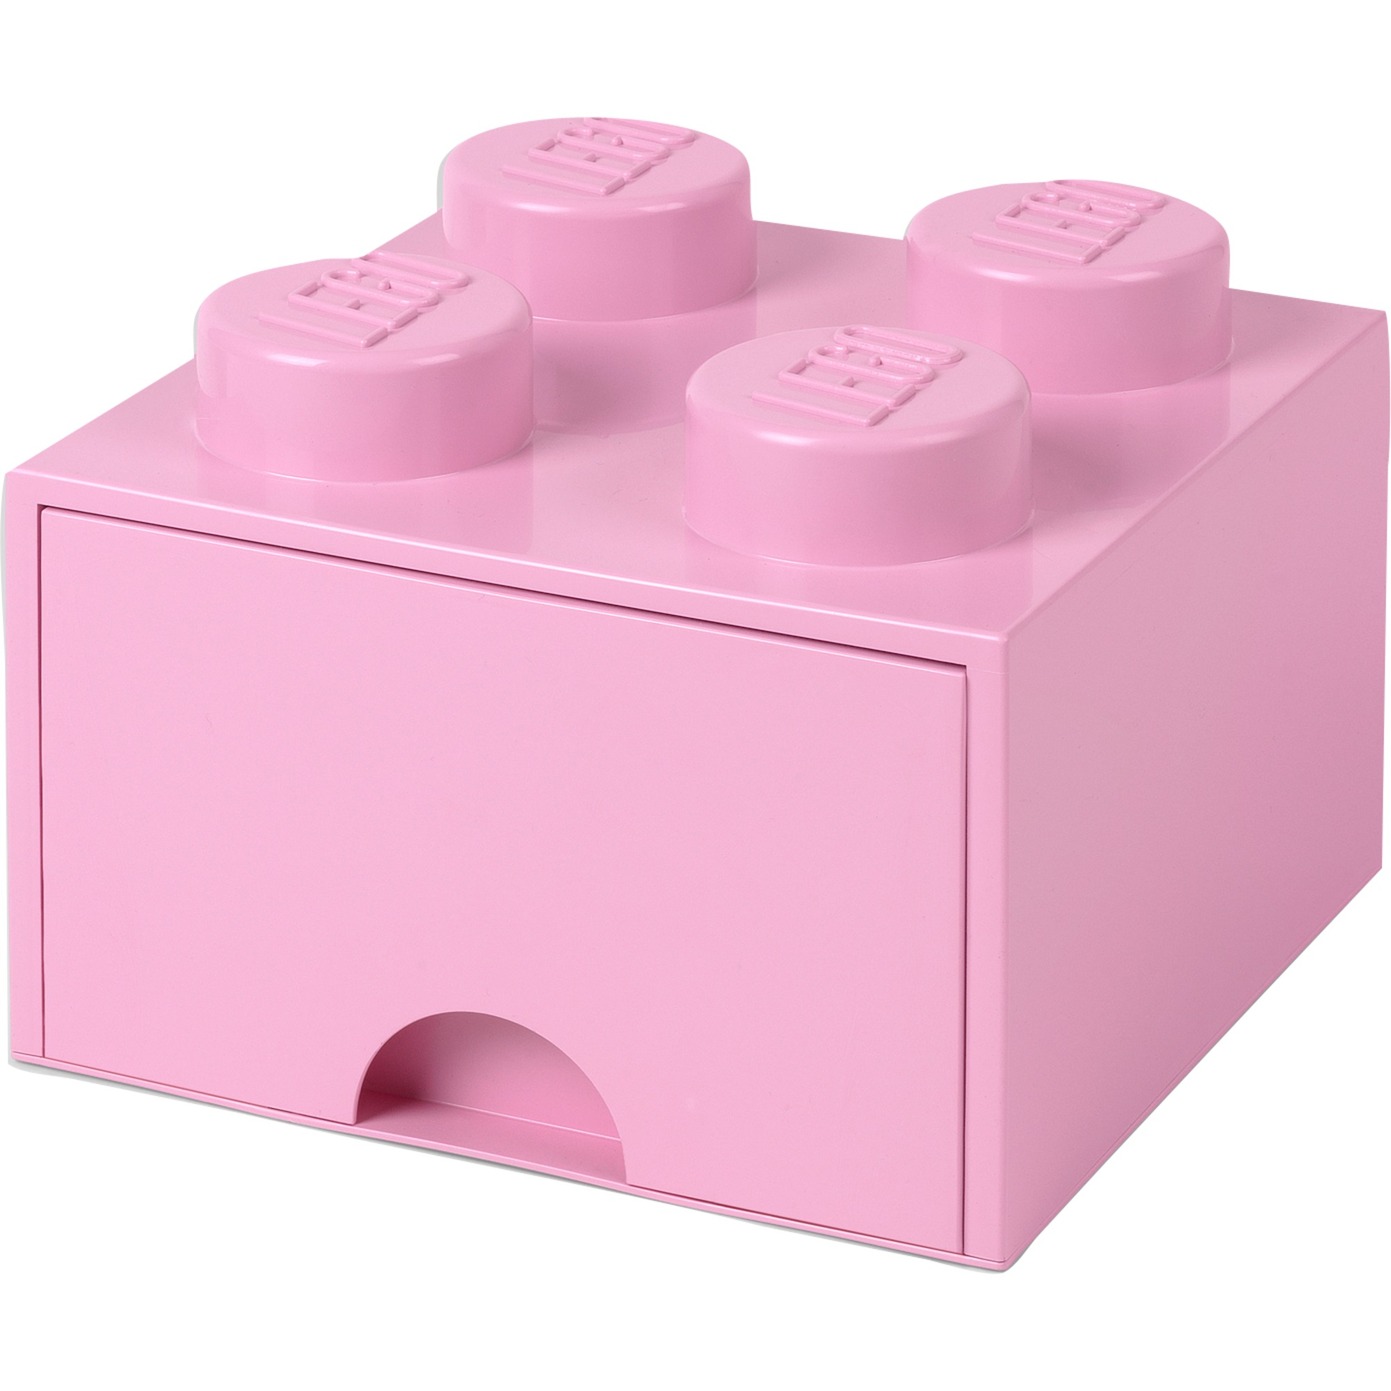 Image of Alternate - LEGO Brick Drawer 4 rosa, Aufbewahrungsbox online einkaufen bei Alternate